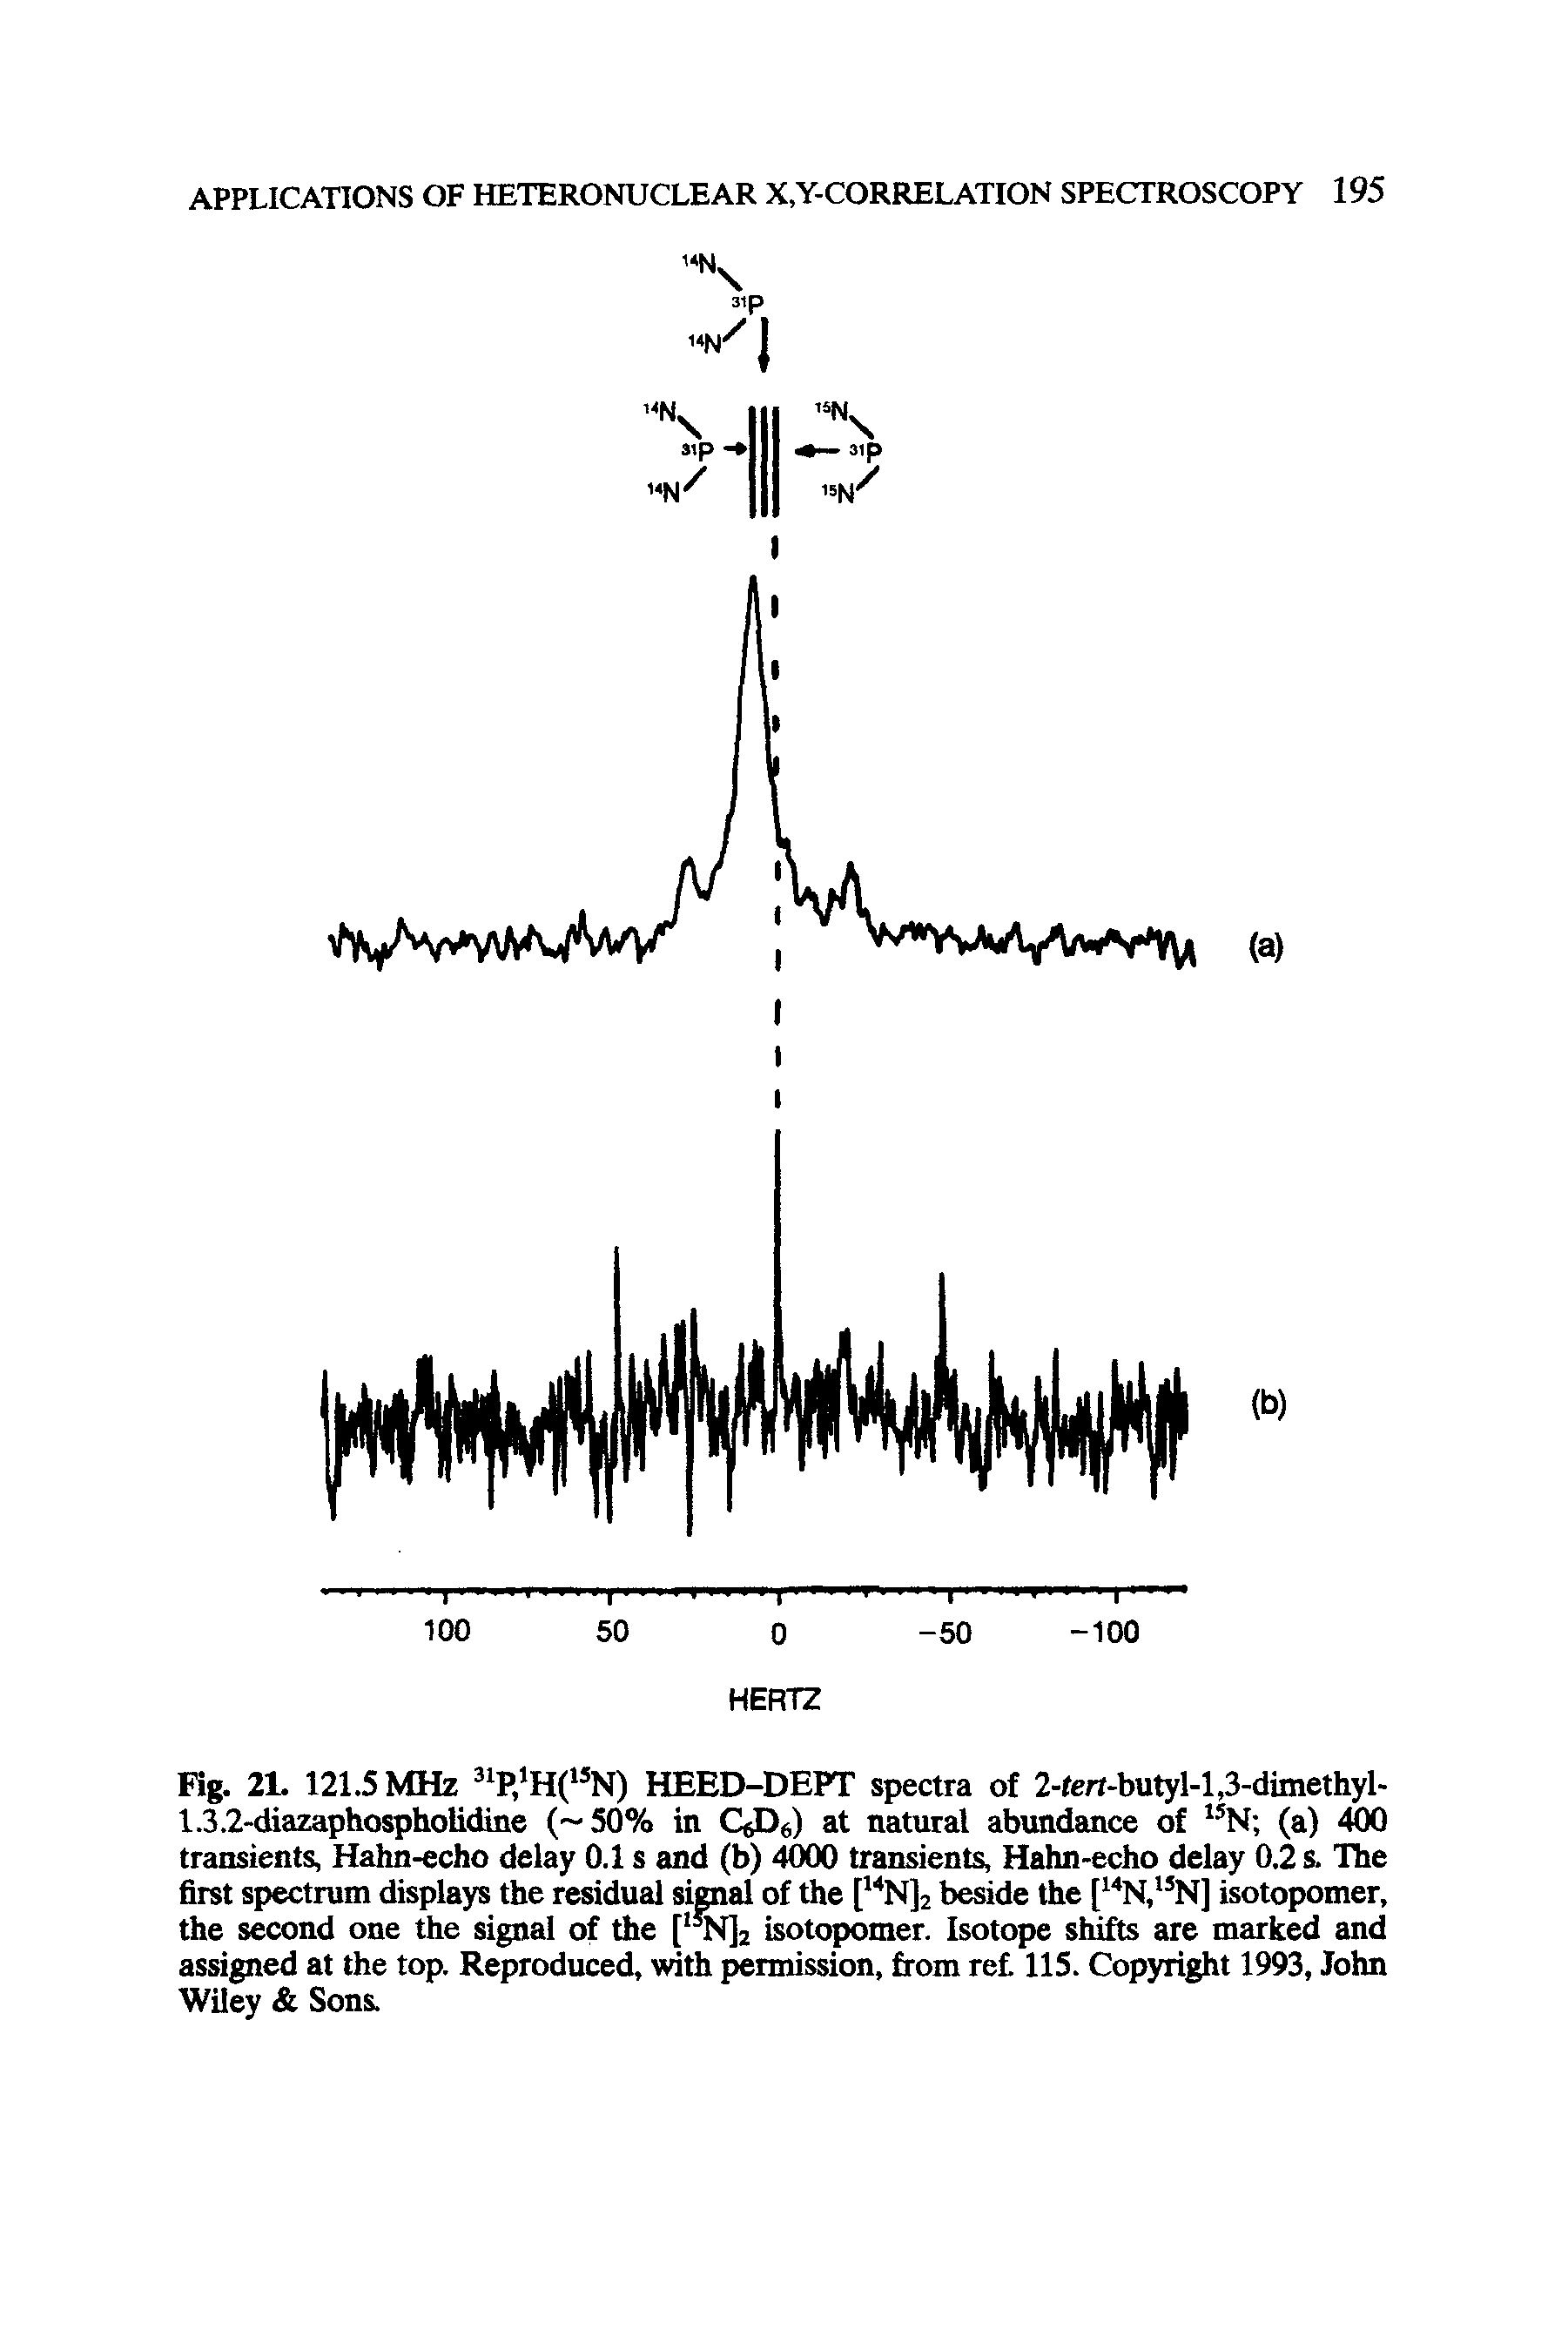 Fig. 21. 121.5 MHz HEED-DEPT spectra of 2-fert-butyl-l,3-dimethyl-...